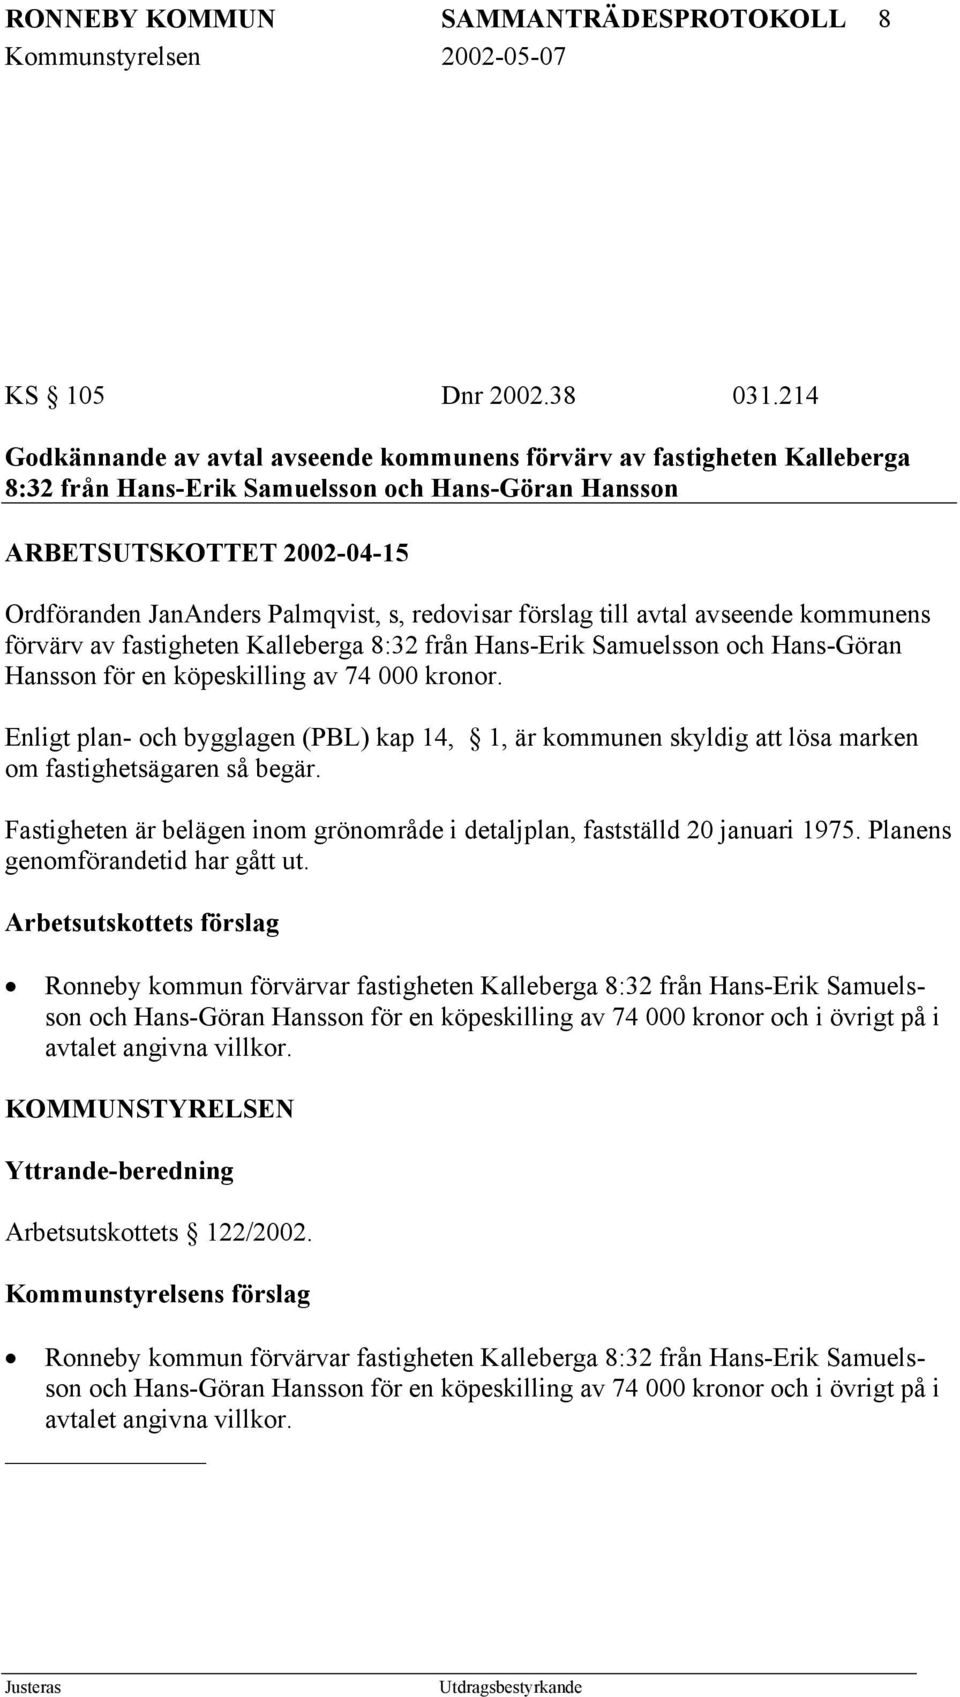 redovisar förslag till avtal avseende kommunens förvärv av fastigheten Kalleberga 8:32 från Hans-Erik Samuelsson och Hans-Göran Hansson för en köpeskilling av 74 000 kronor.